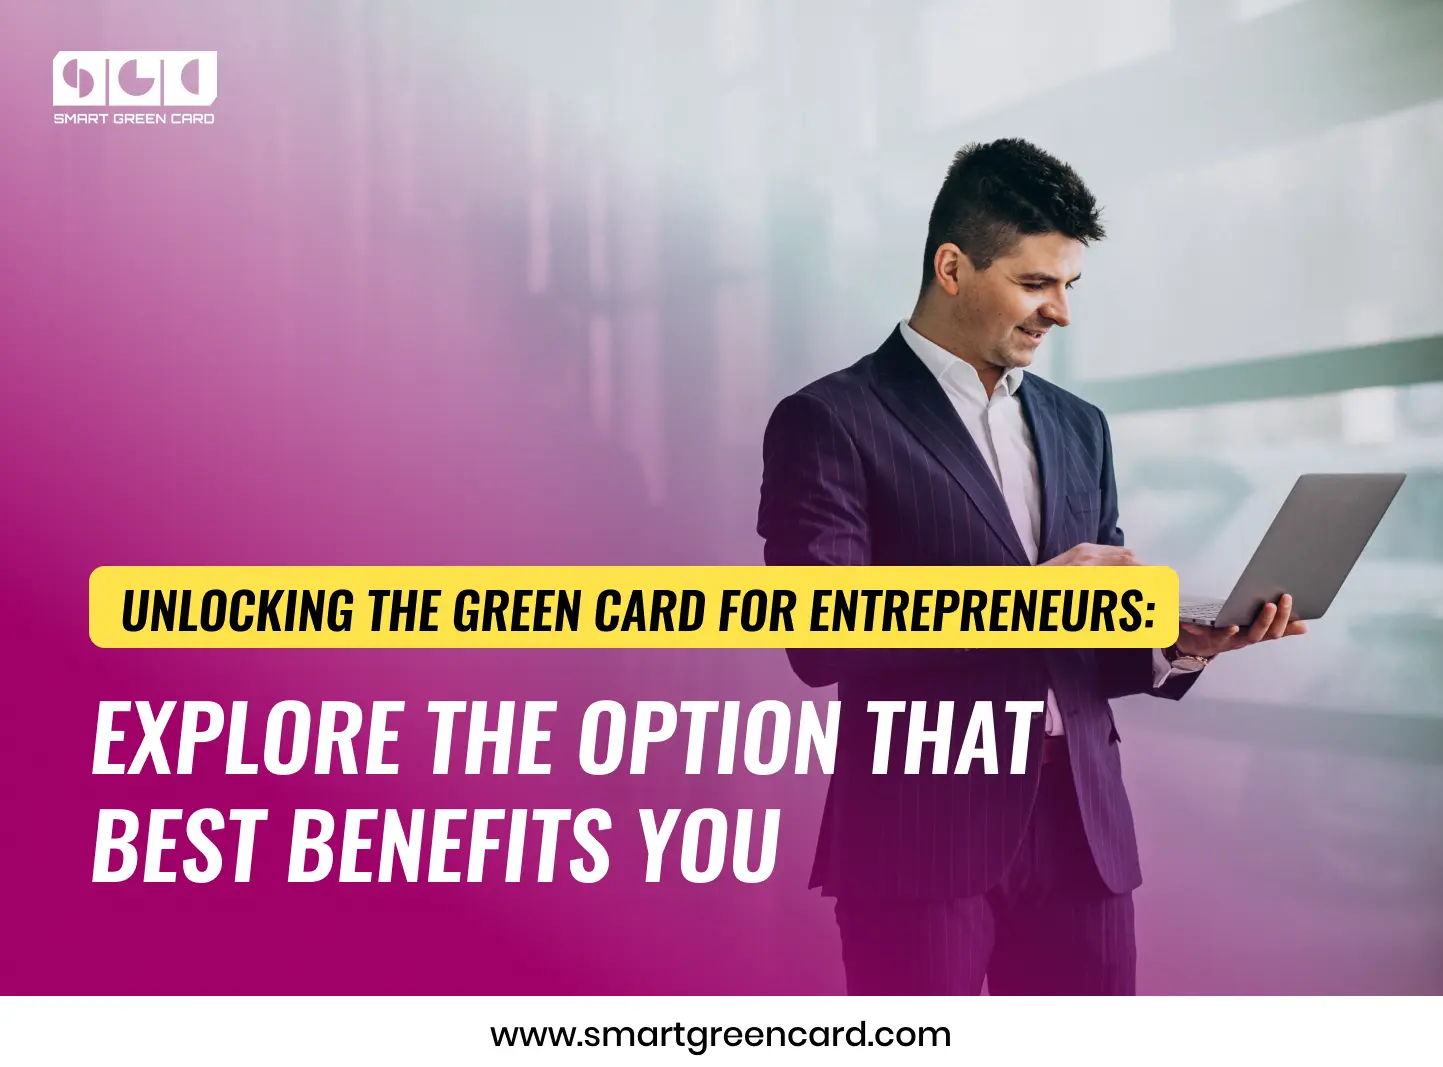 Green Card Options for Entrepreneurs